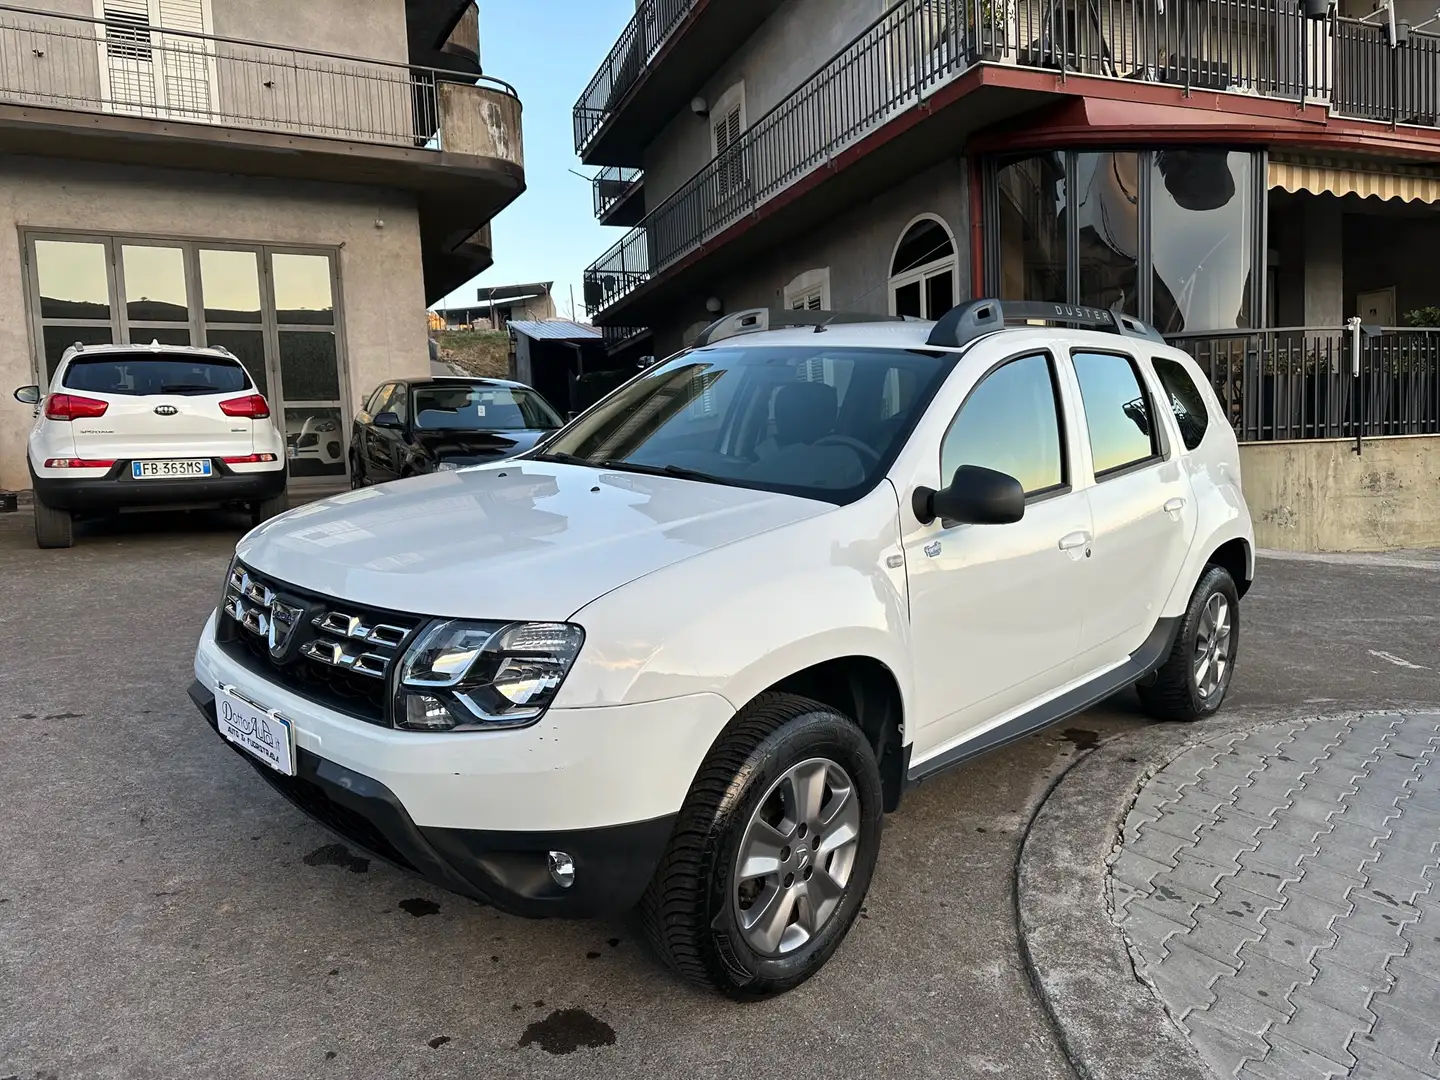 Dacia Duster usata a Maniace - Catania - Ct per € 12.999,-